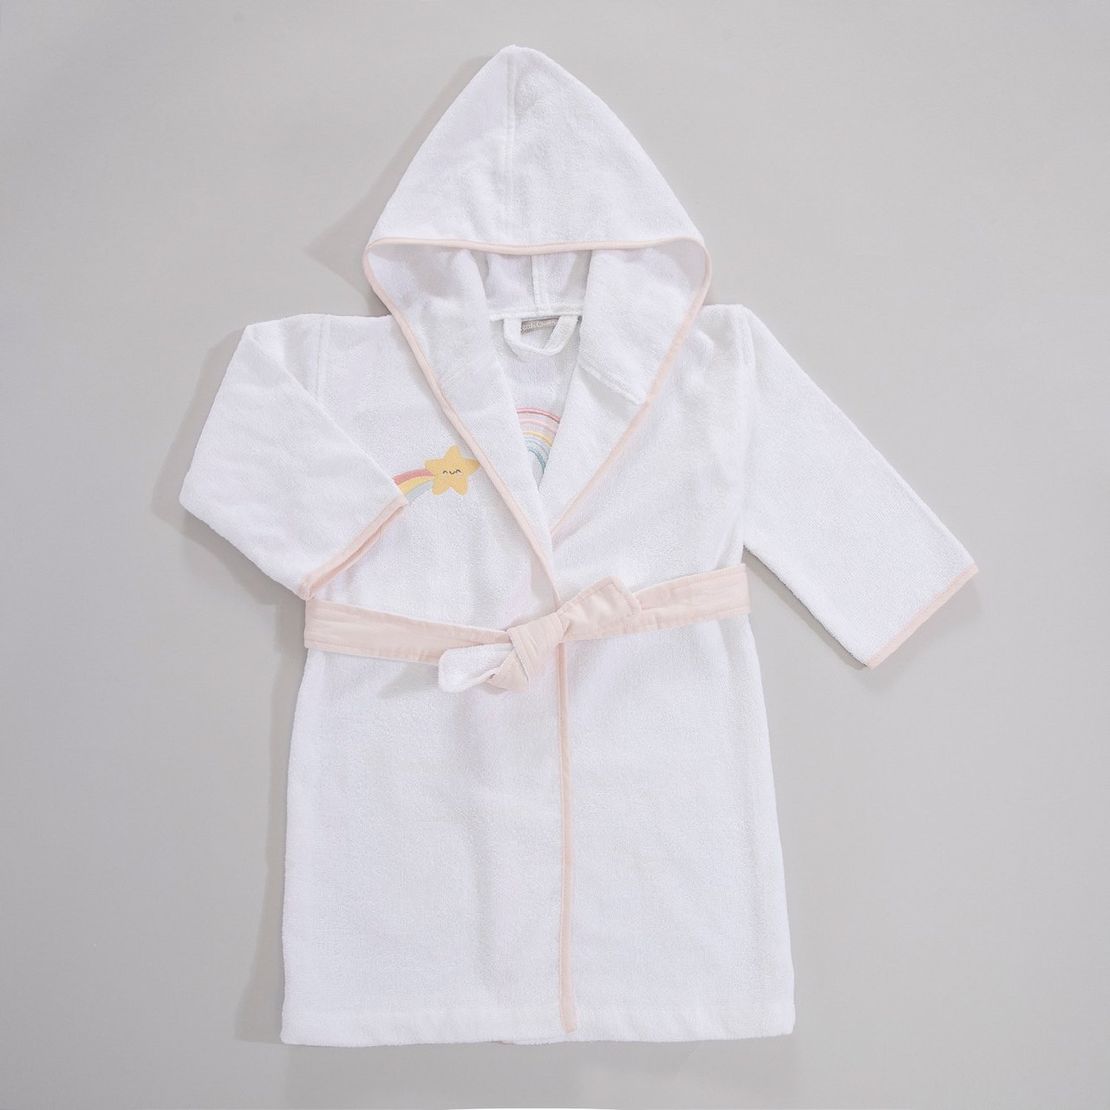 Дитячий махровий халат Rainbow, для дівчинки з аплікацією Веселка єдинорога 5-6 років, білий